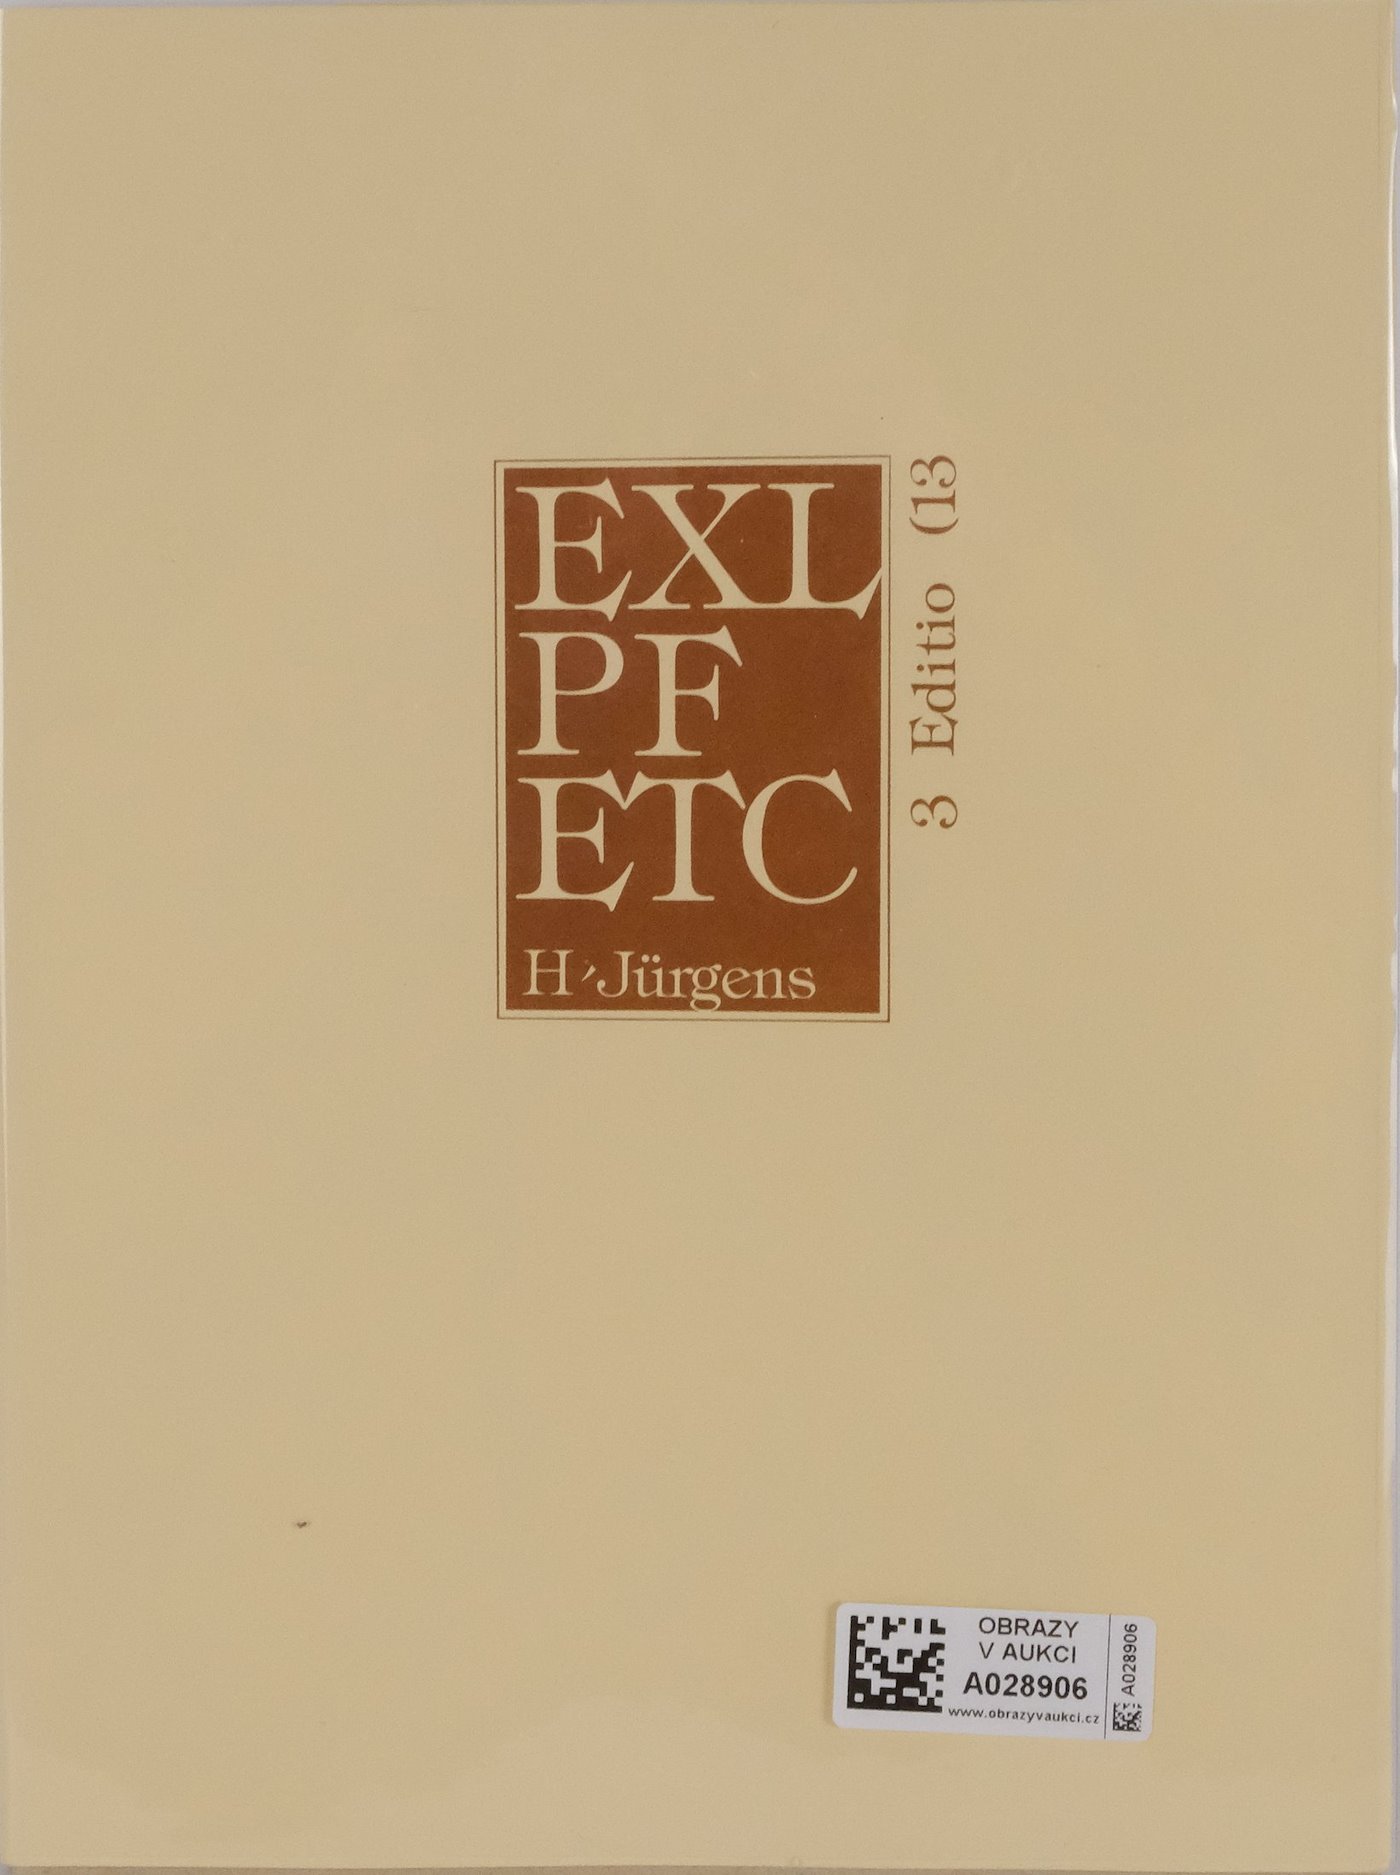 Harry Jürgens - Bibliofilie s 13 originálními grafikami - Editio 13 - EXL PF ETC 